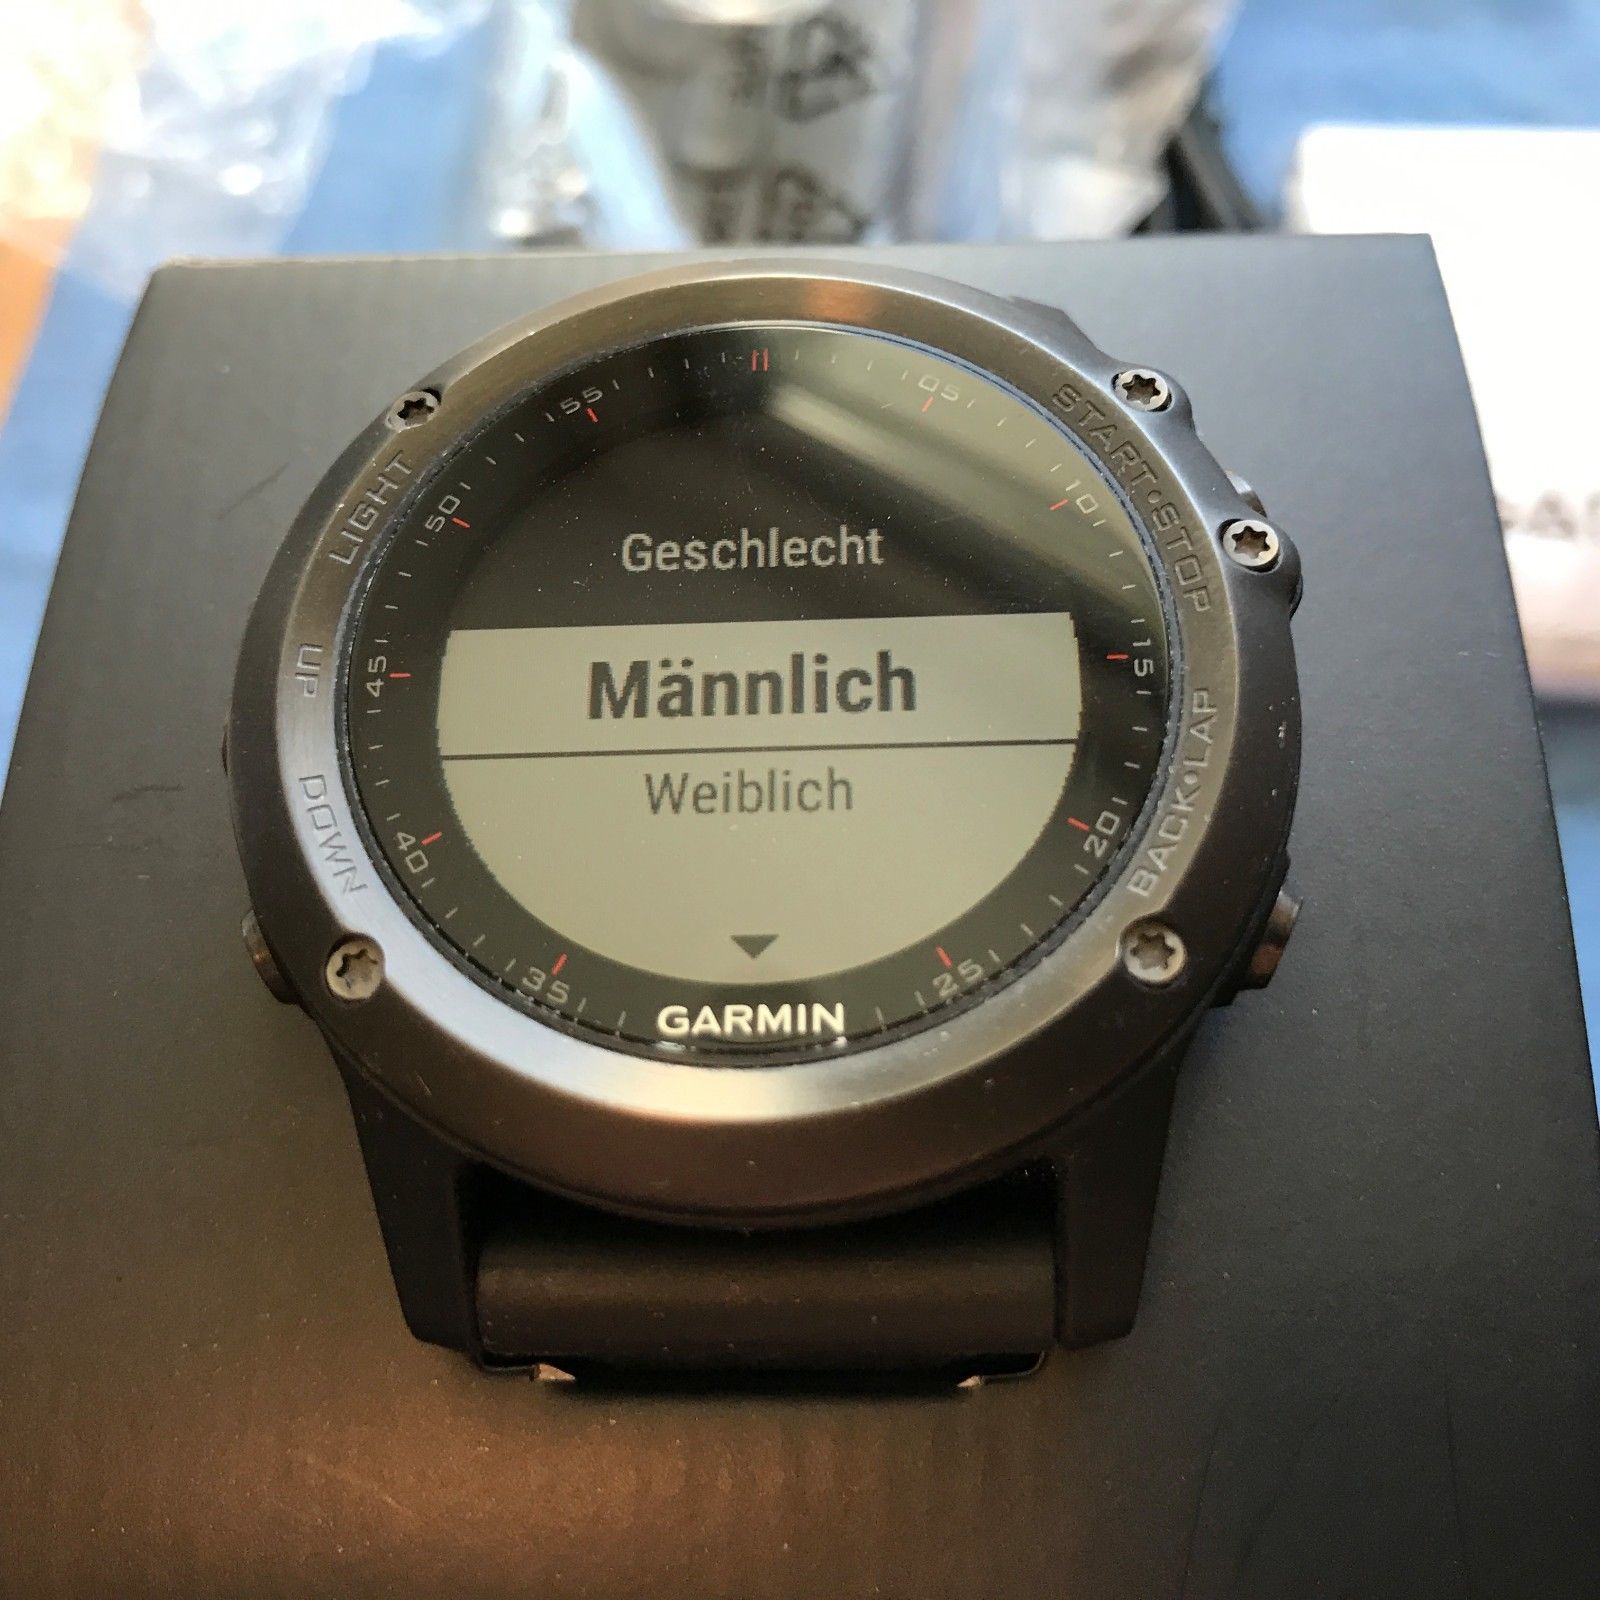 Garmin fenix 3 GPS Uhr gebraucht + Garmin Premium Herzfrequenz-Brustgurt HRM-RUN